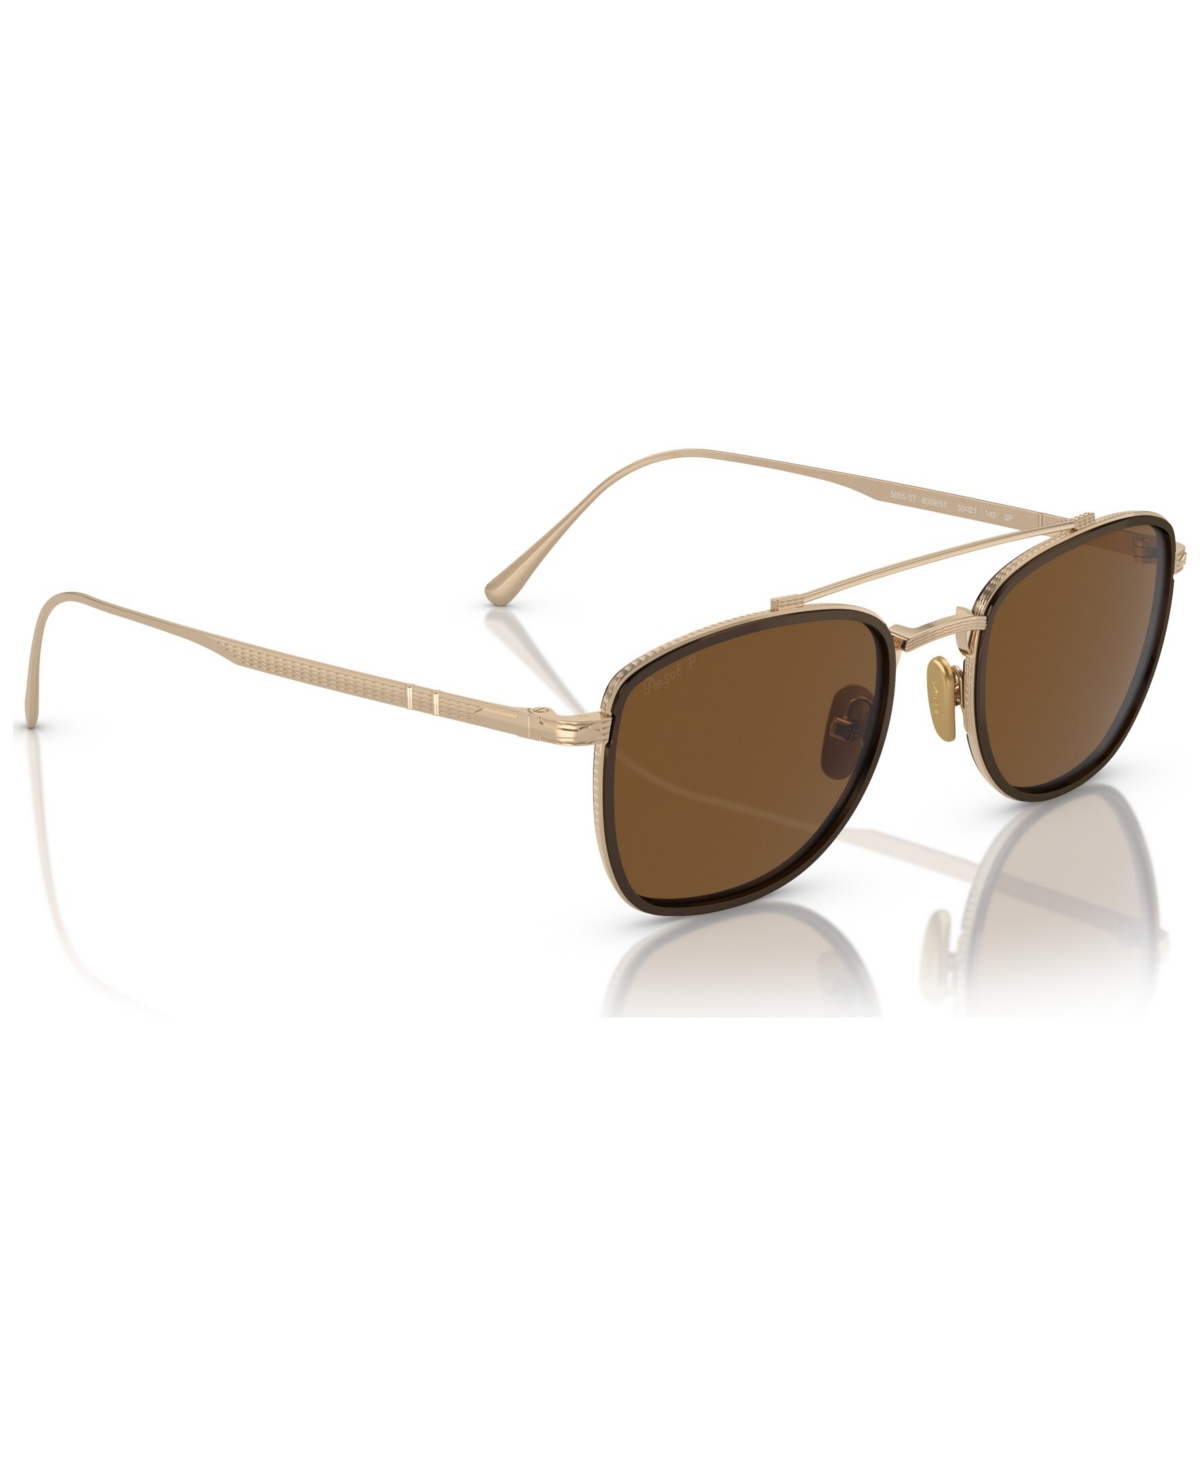 Persol Men's Polarized Sunglasses, Polar Po5005st In Gold,brown